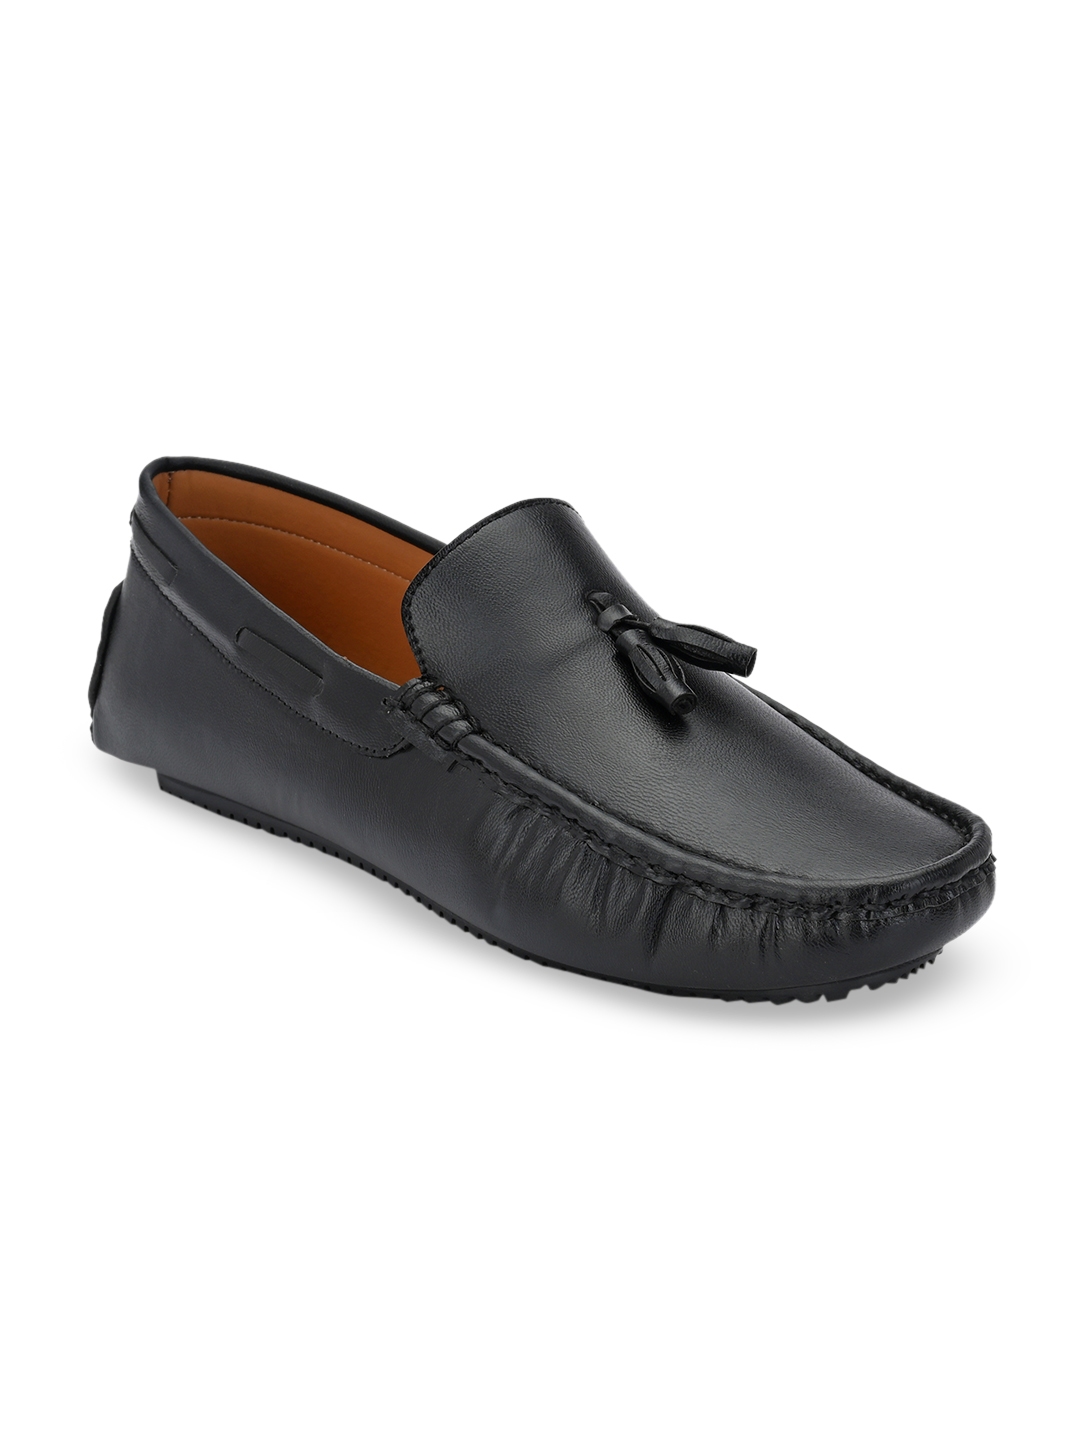 Buy El Paso Men Black Driving Shoes - Casual Shoes for Men 11119664 ...